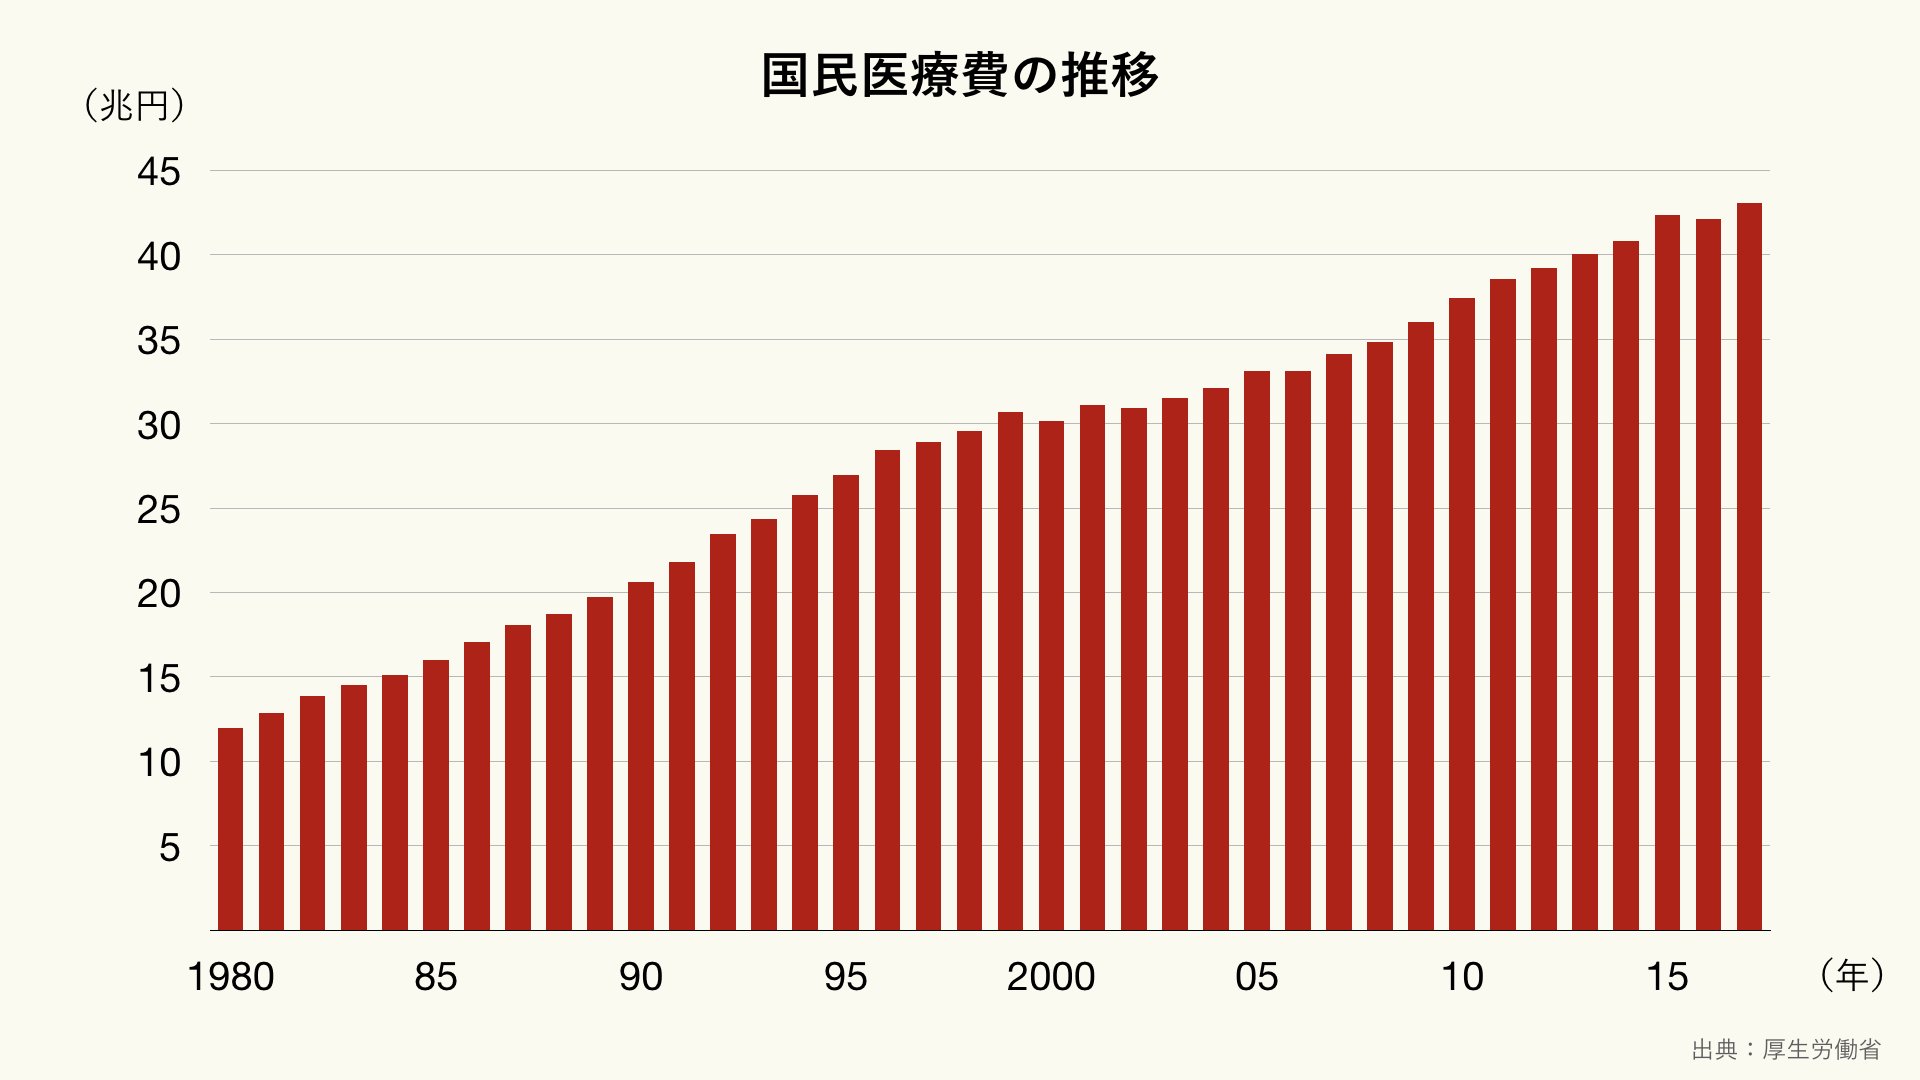 日本の国民医療費の推移（クリーム）